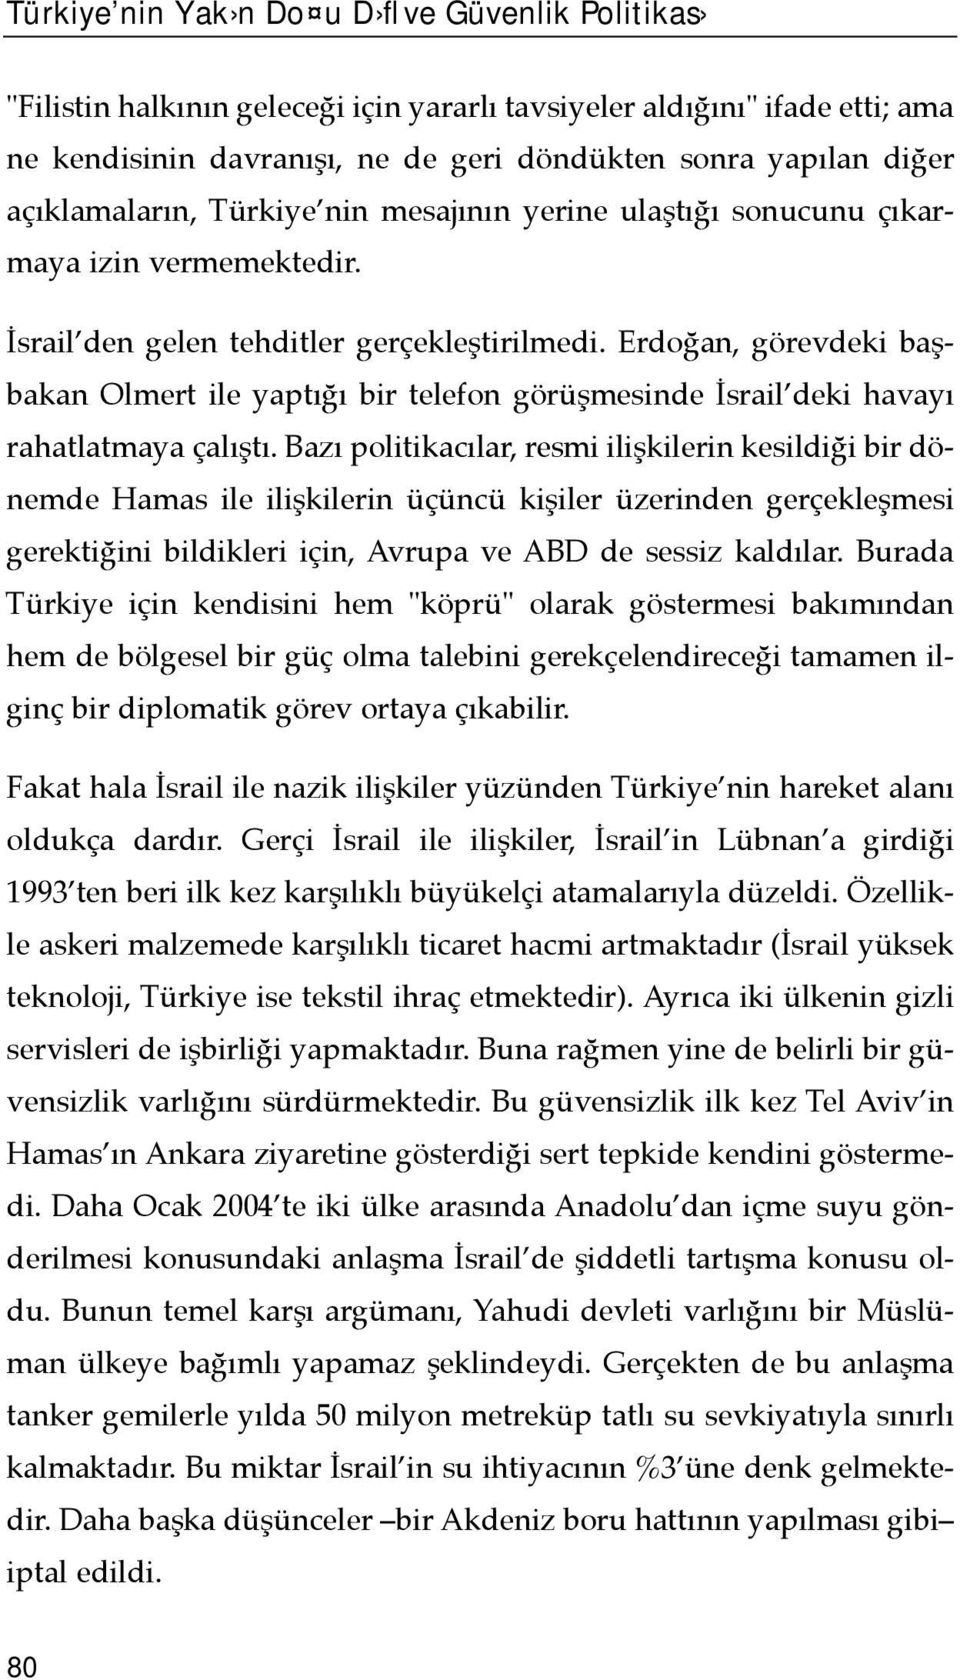 Erdoğan, görevdeki başbakan Olmert ile yaptõğõ bir telefon görüşmesinde İsrail deki havayõ rahatlatmaya çalõştõ.